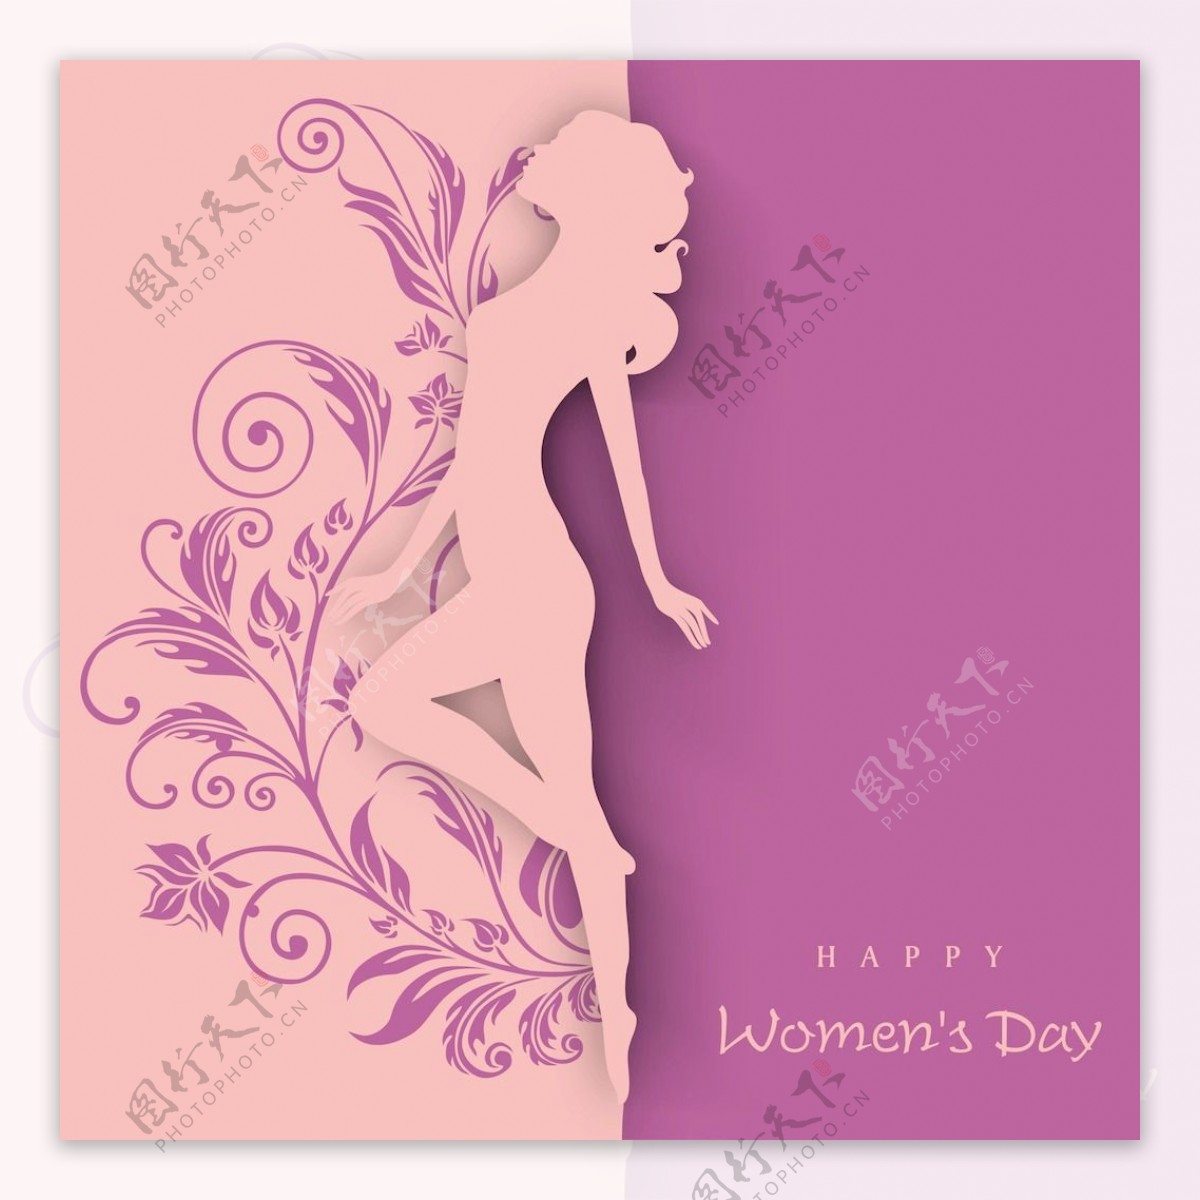 三八妇女节贺卡或海报的橙色和紫色的背景上的舞姿女孩轮廓设计